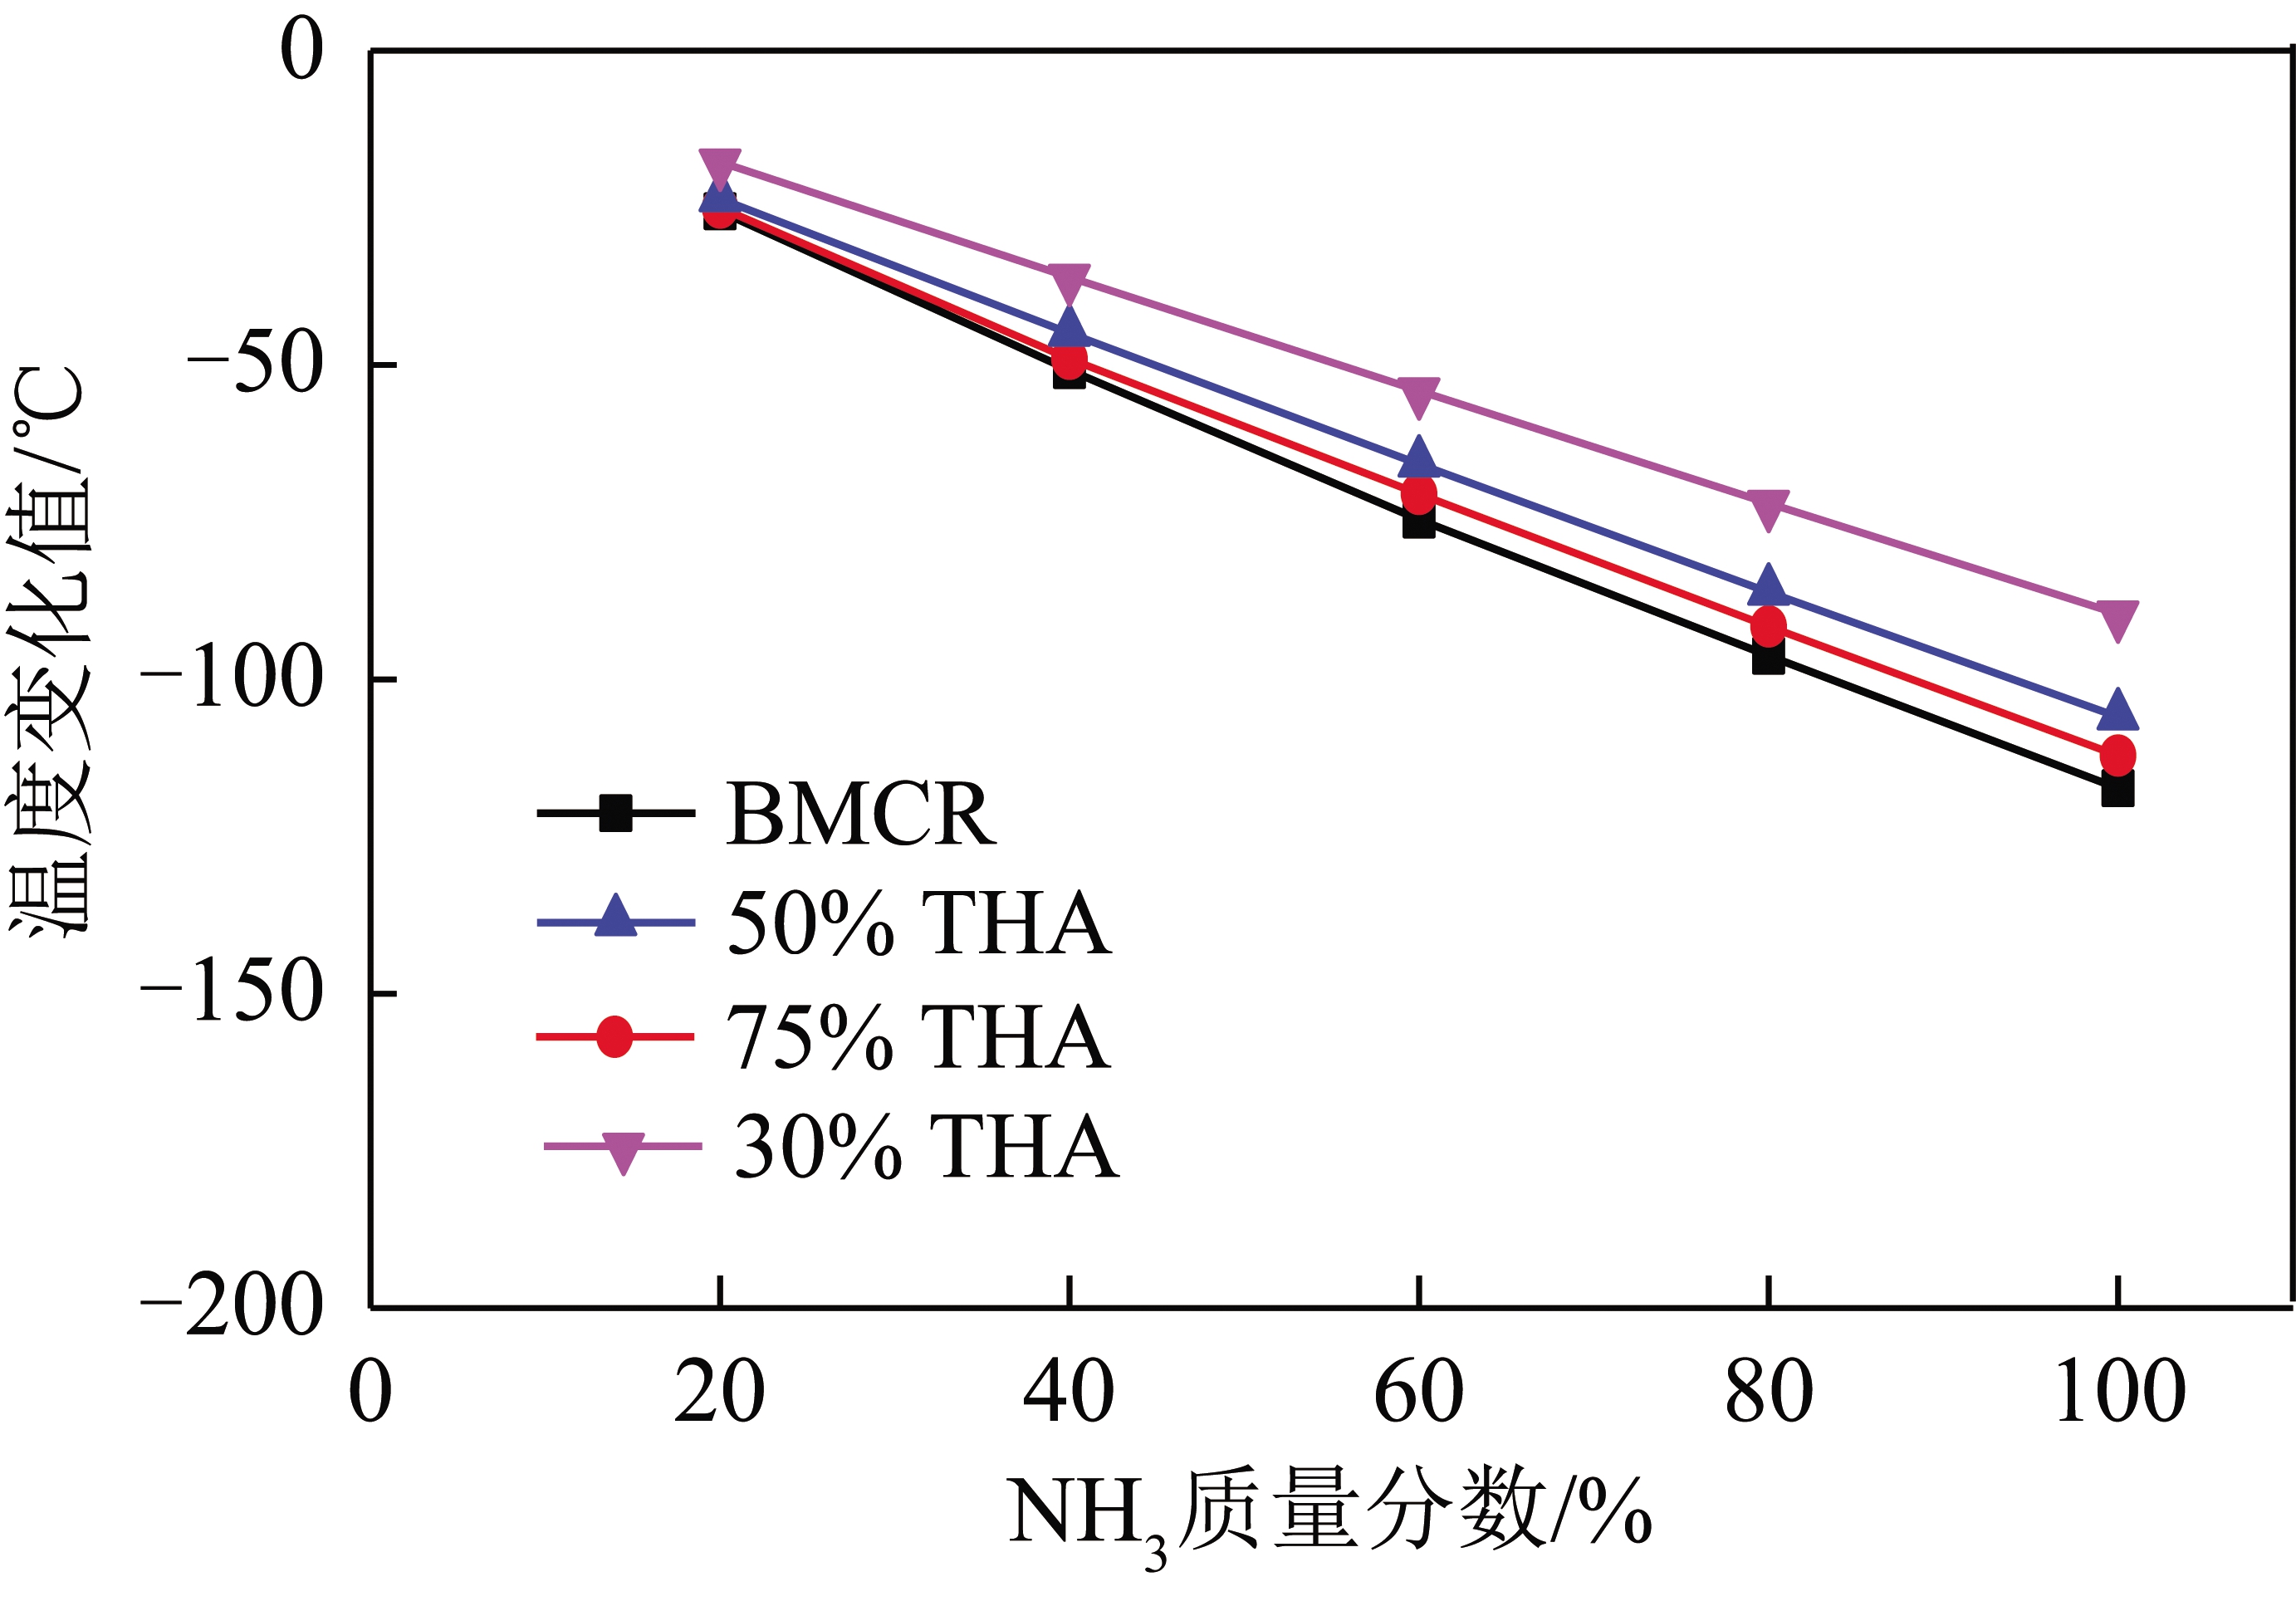 大比例掺烧NH3对燃煤机组影响分析